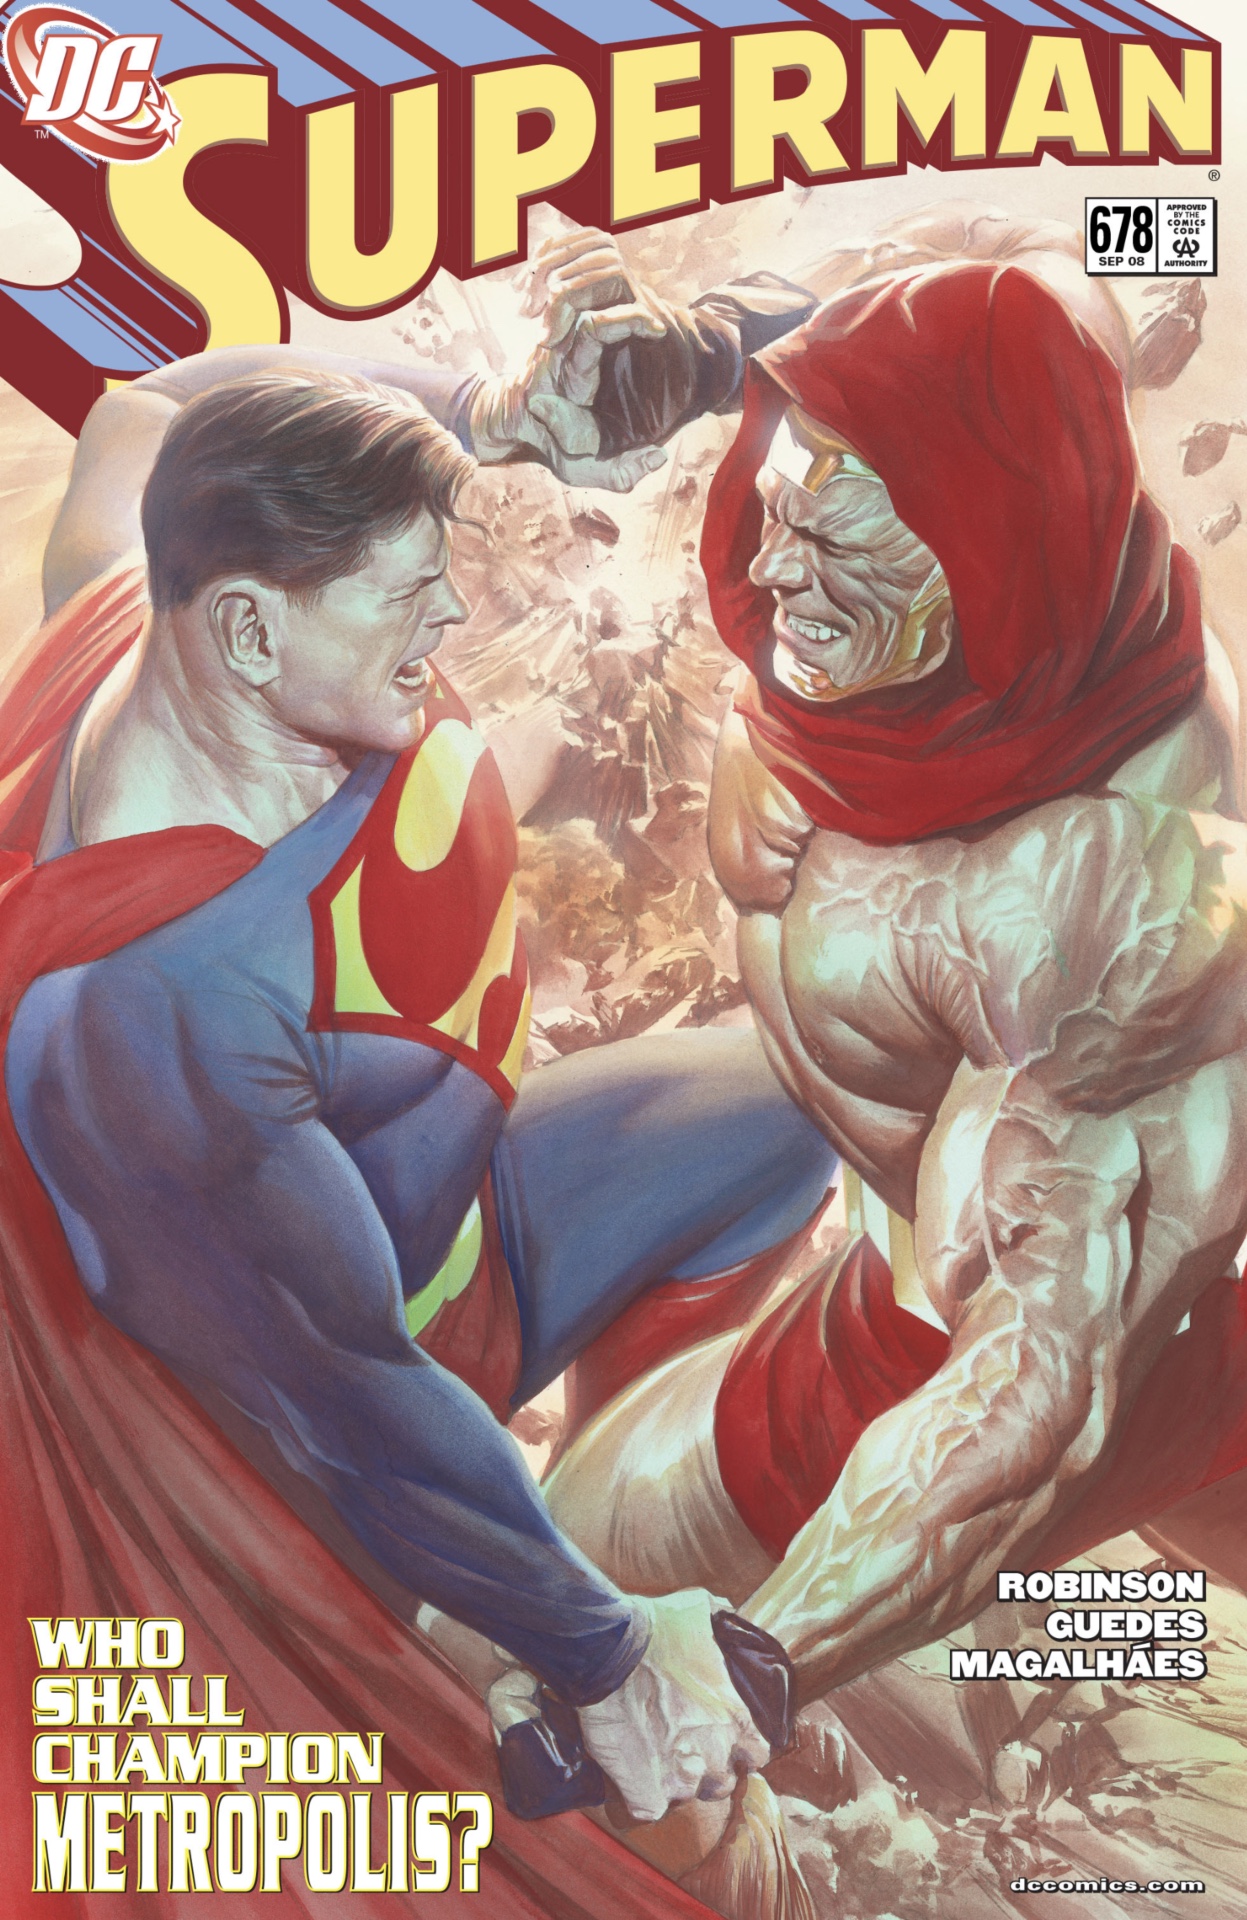 Couverture de Superman #678